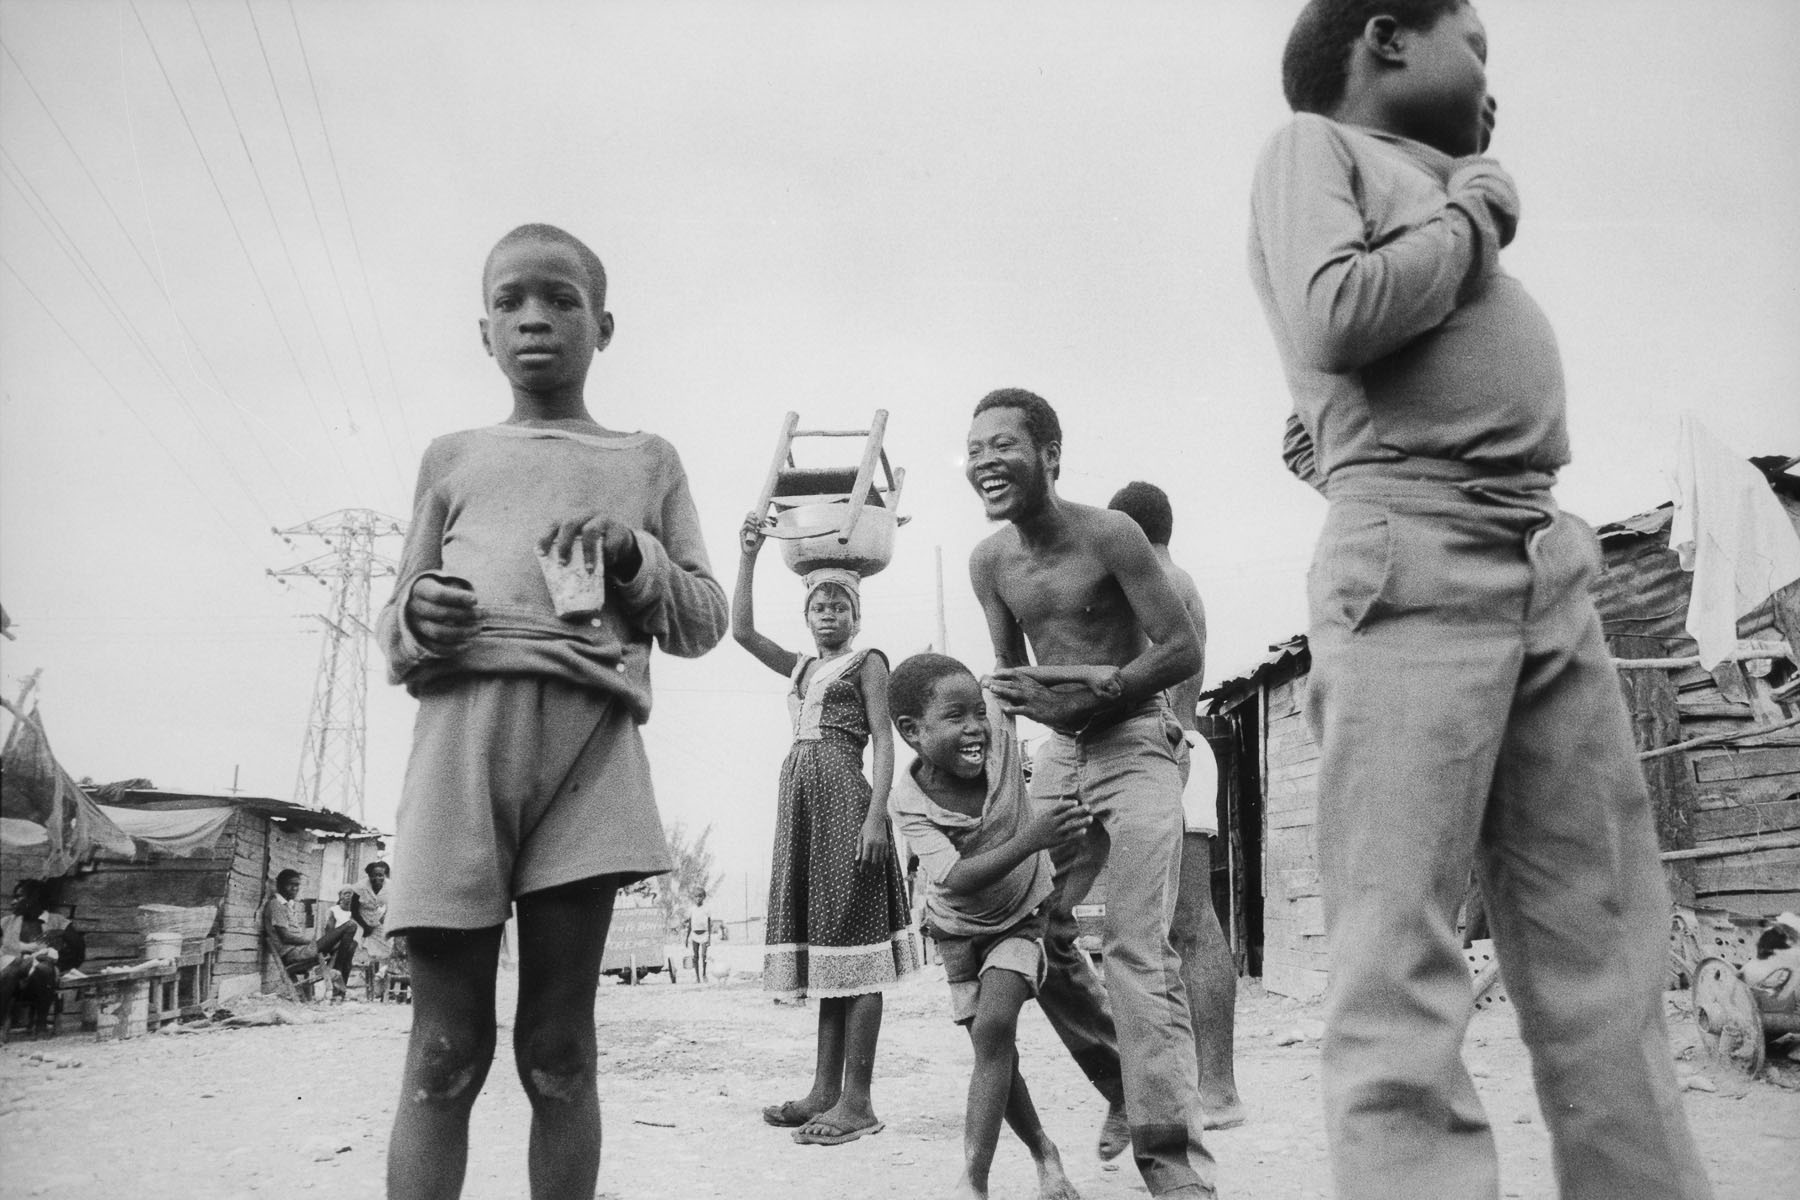 La Saline, shantytown in August 1986